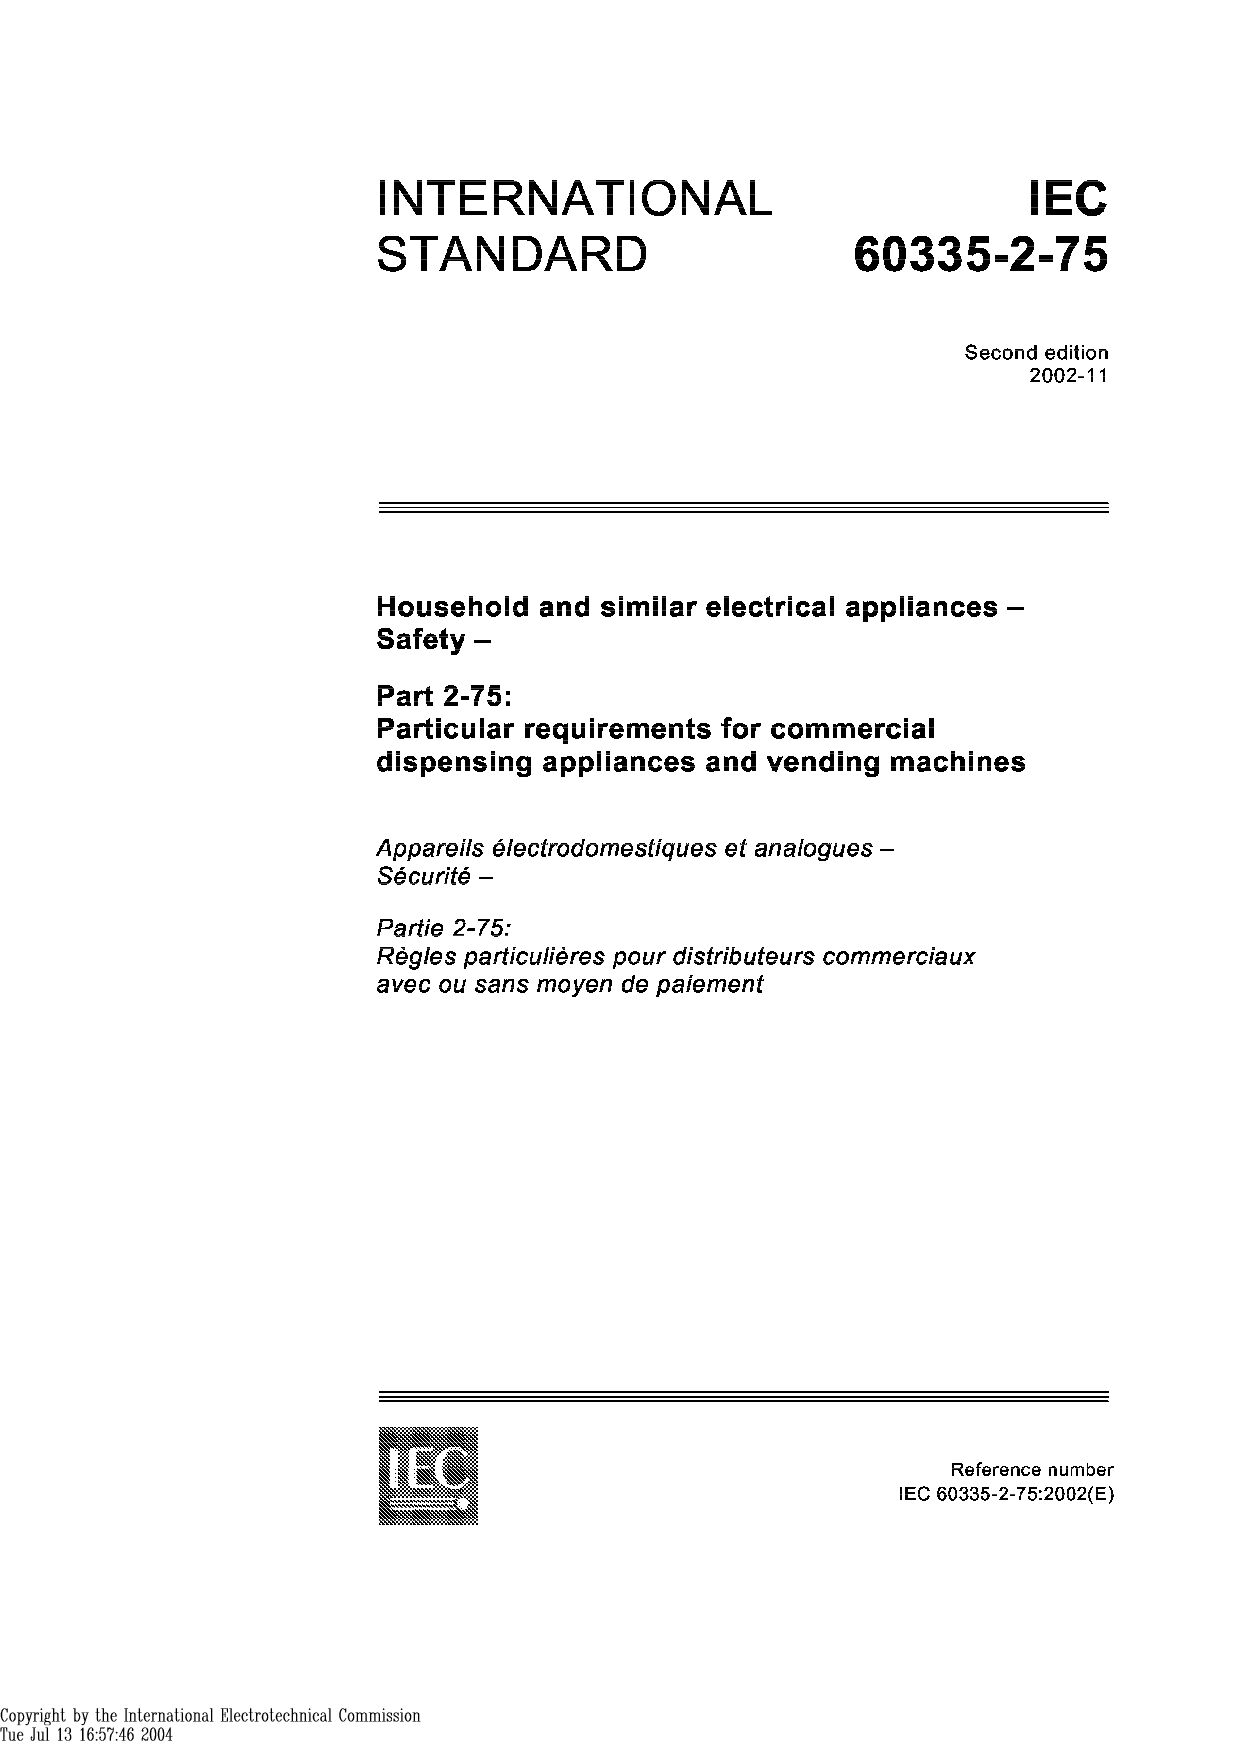 IEC 60335-2-75:2002